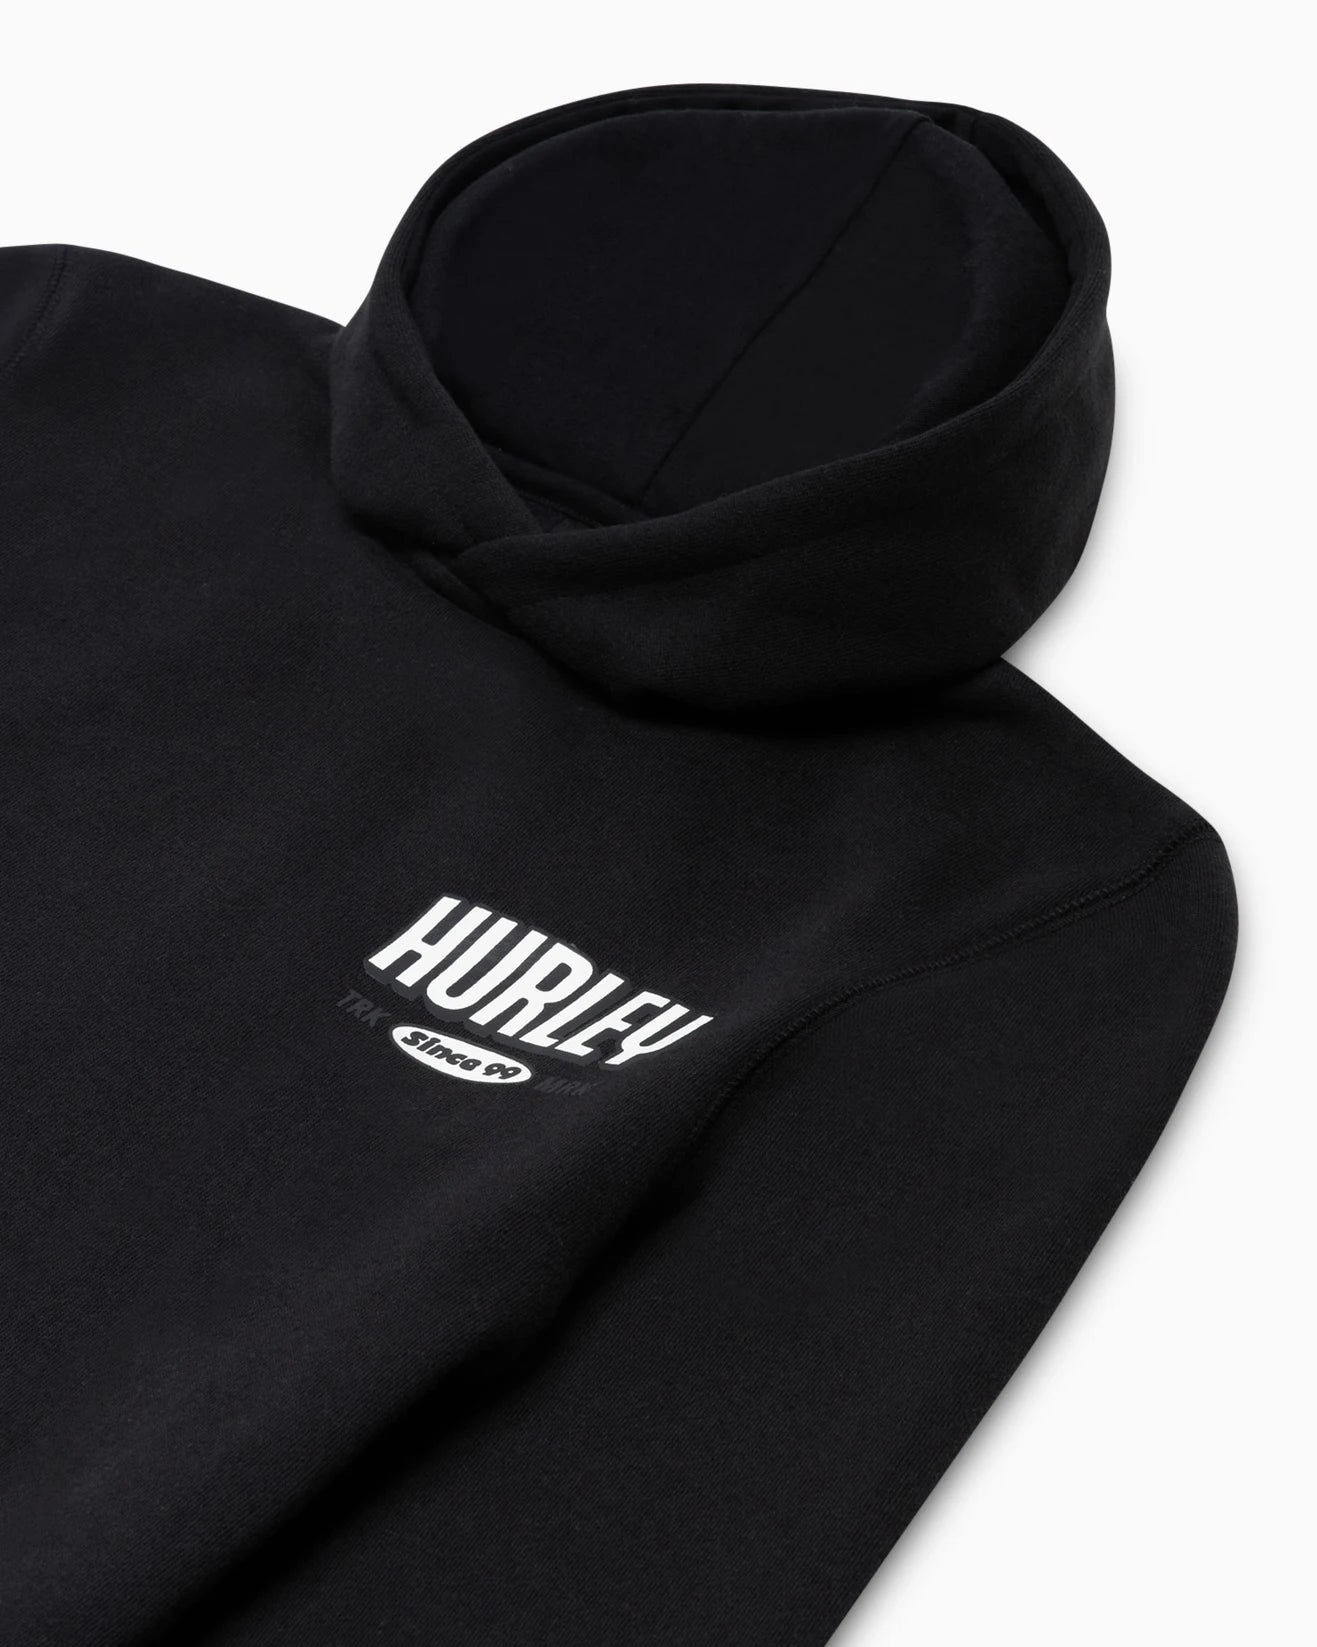 black pullover boys hoodie, hurley